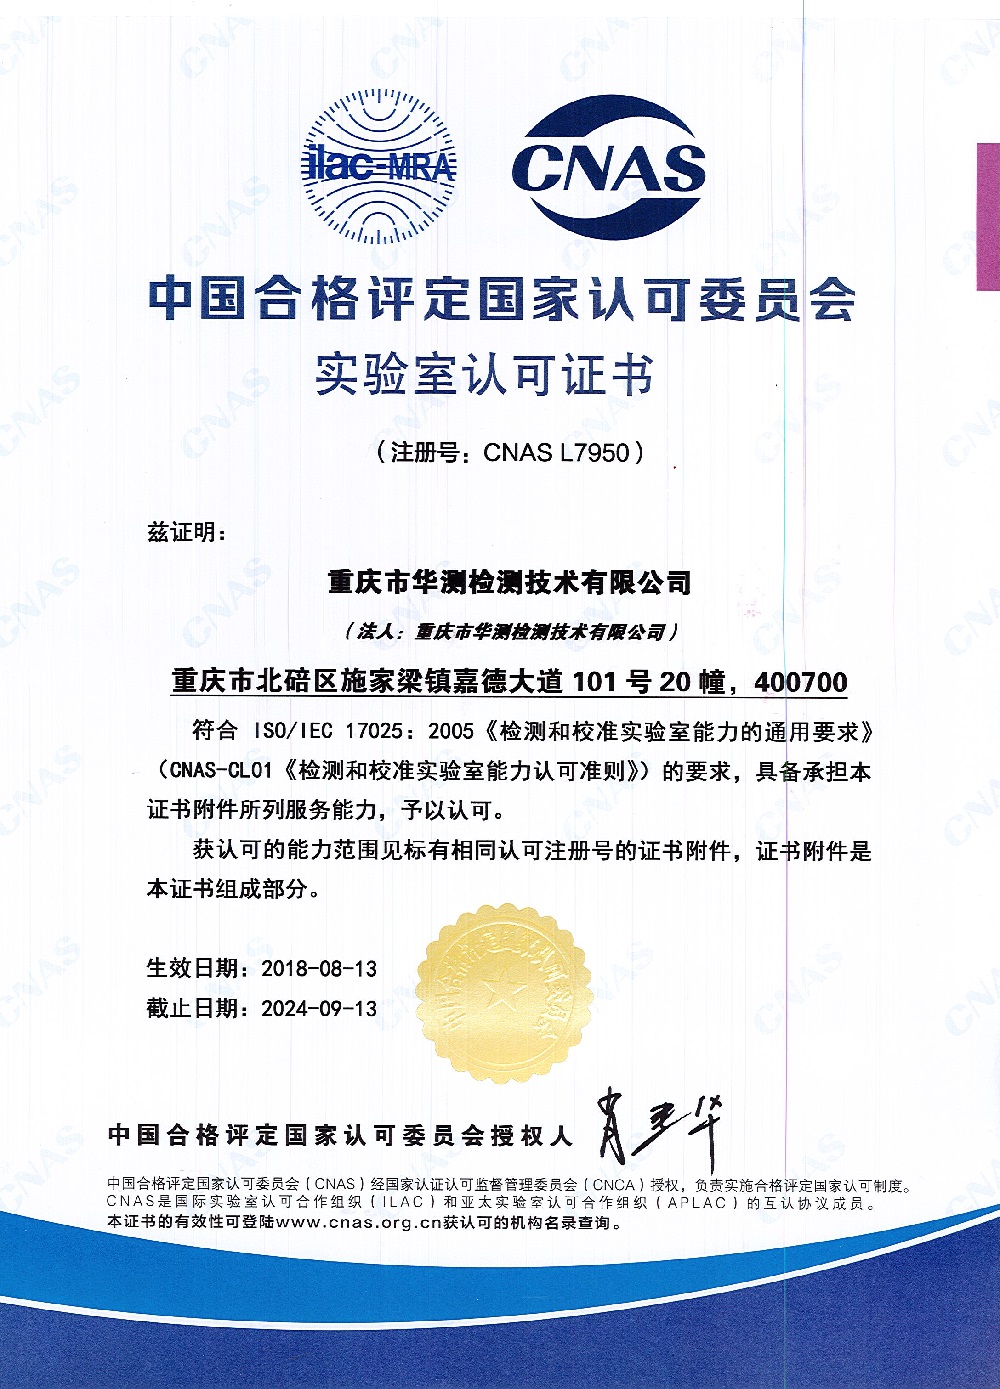 Chongqing CNAS Certificate